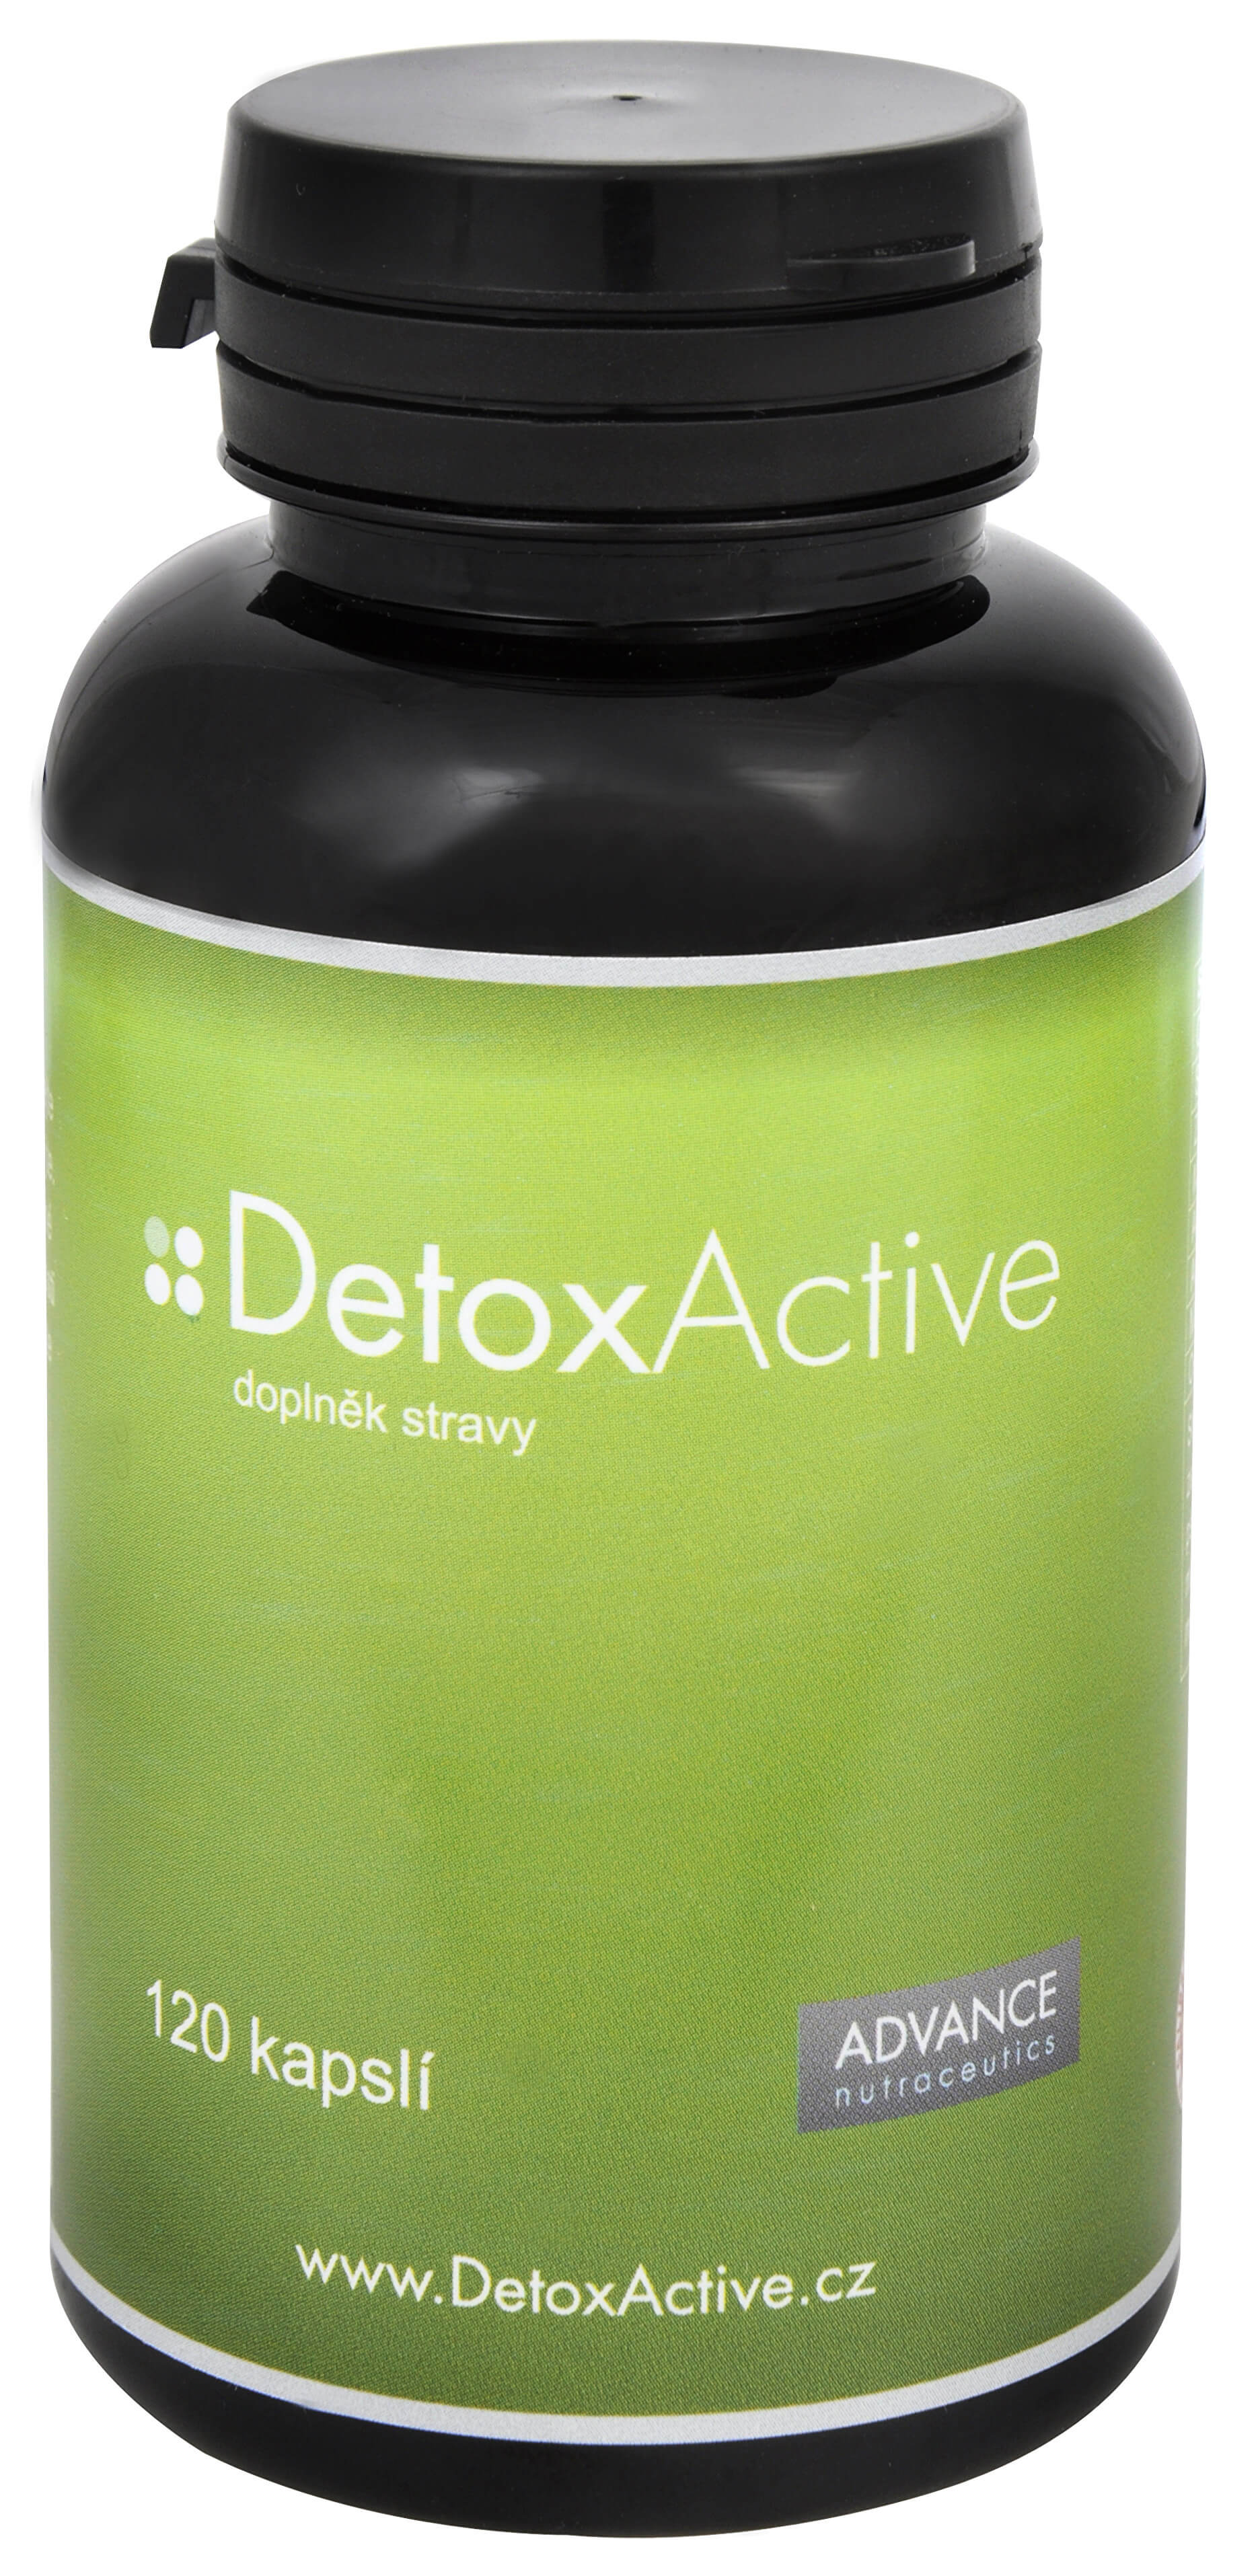 Zobrazit detail výrobku Advance nutraceutics DetoxActive 120 kapslí